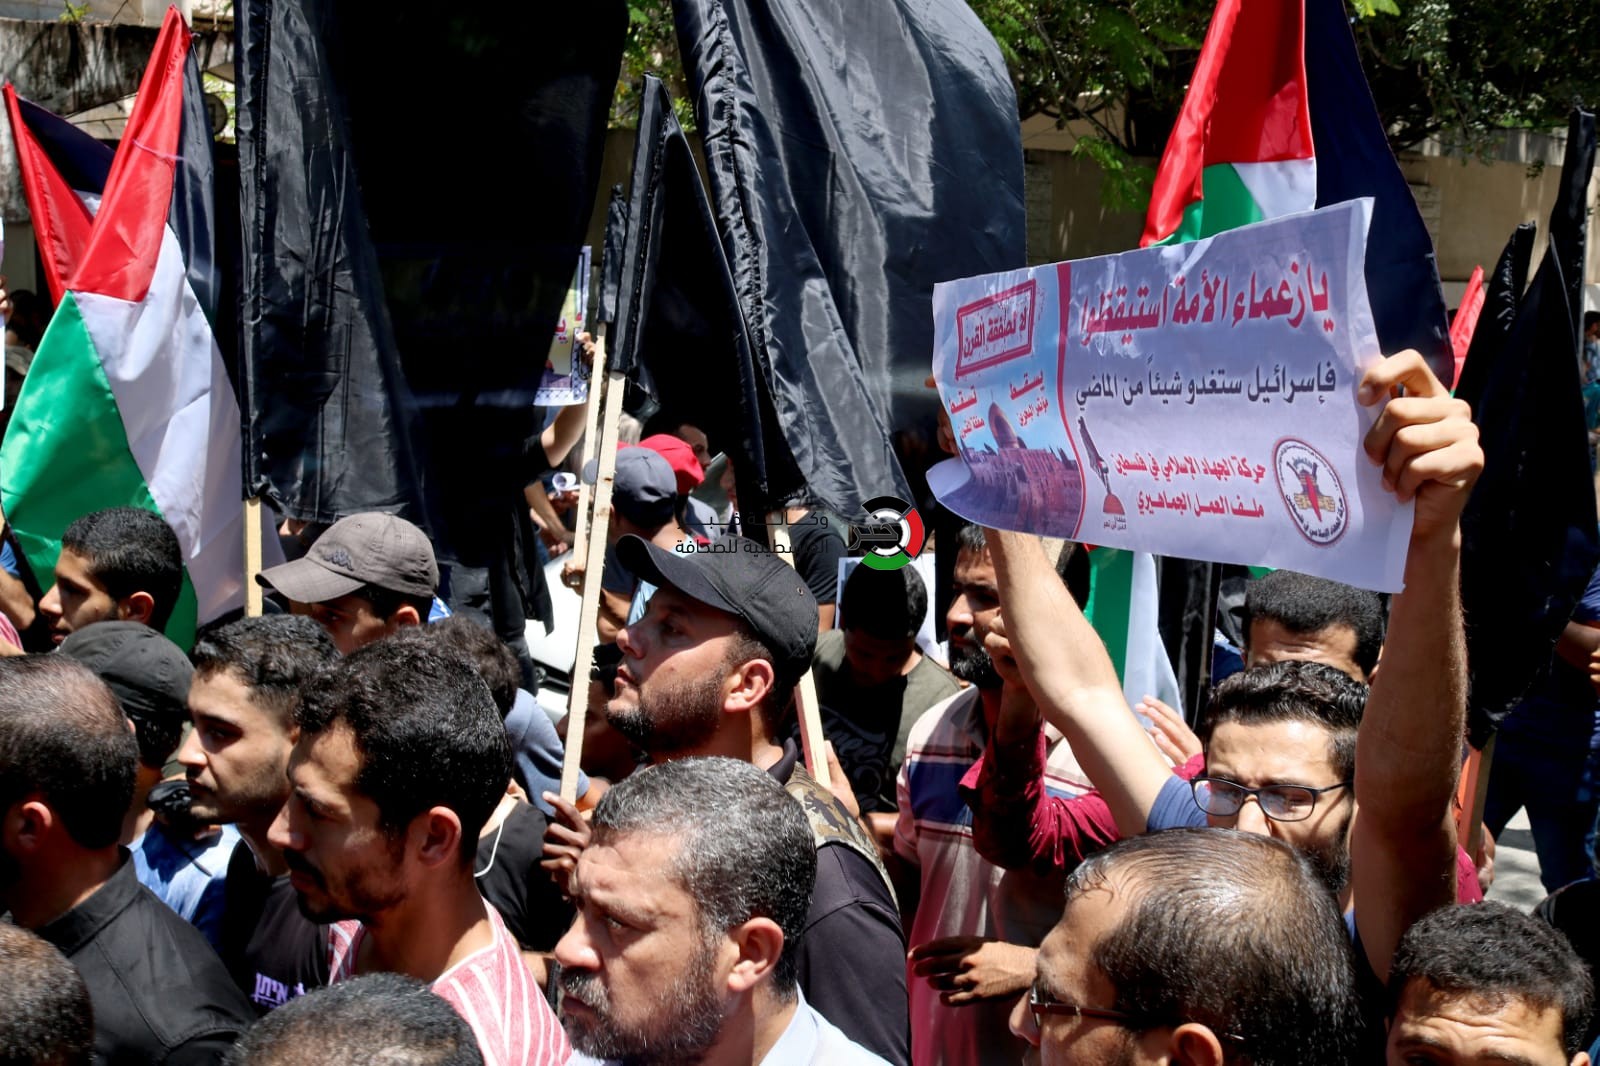 شاهد بالفيديو والصور: مسيرات شعبية في غزّة رفضاً لورشة البحرين وصفقة القرن